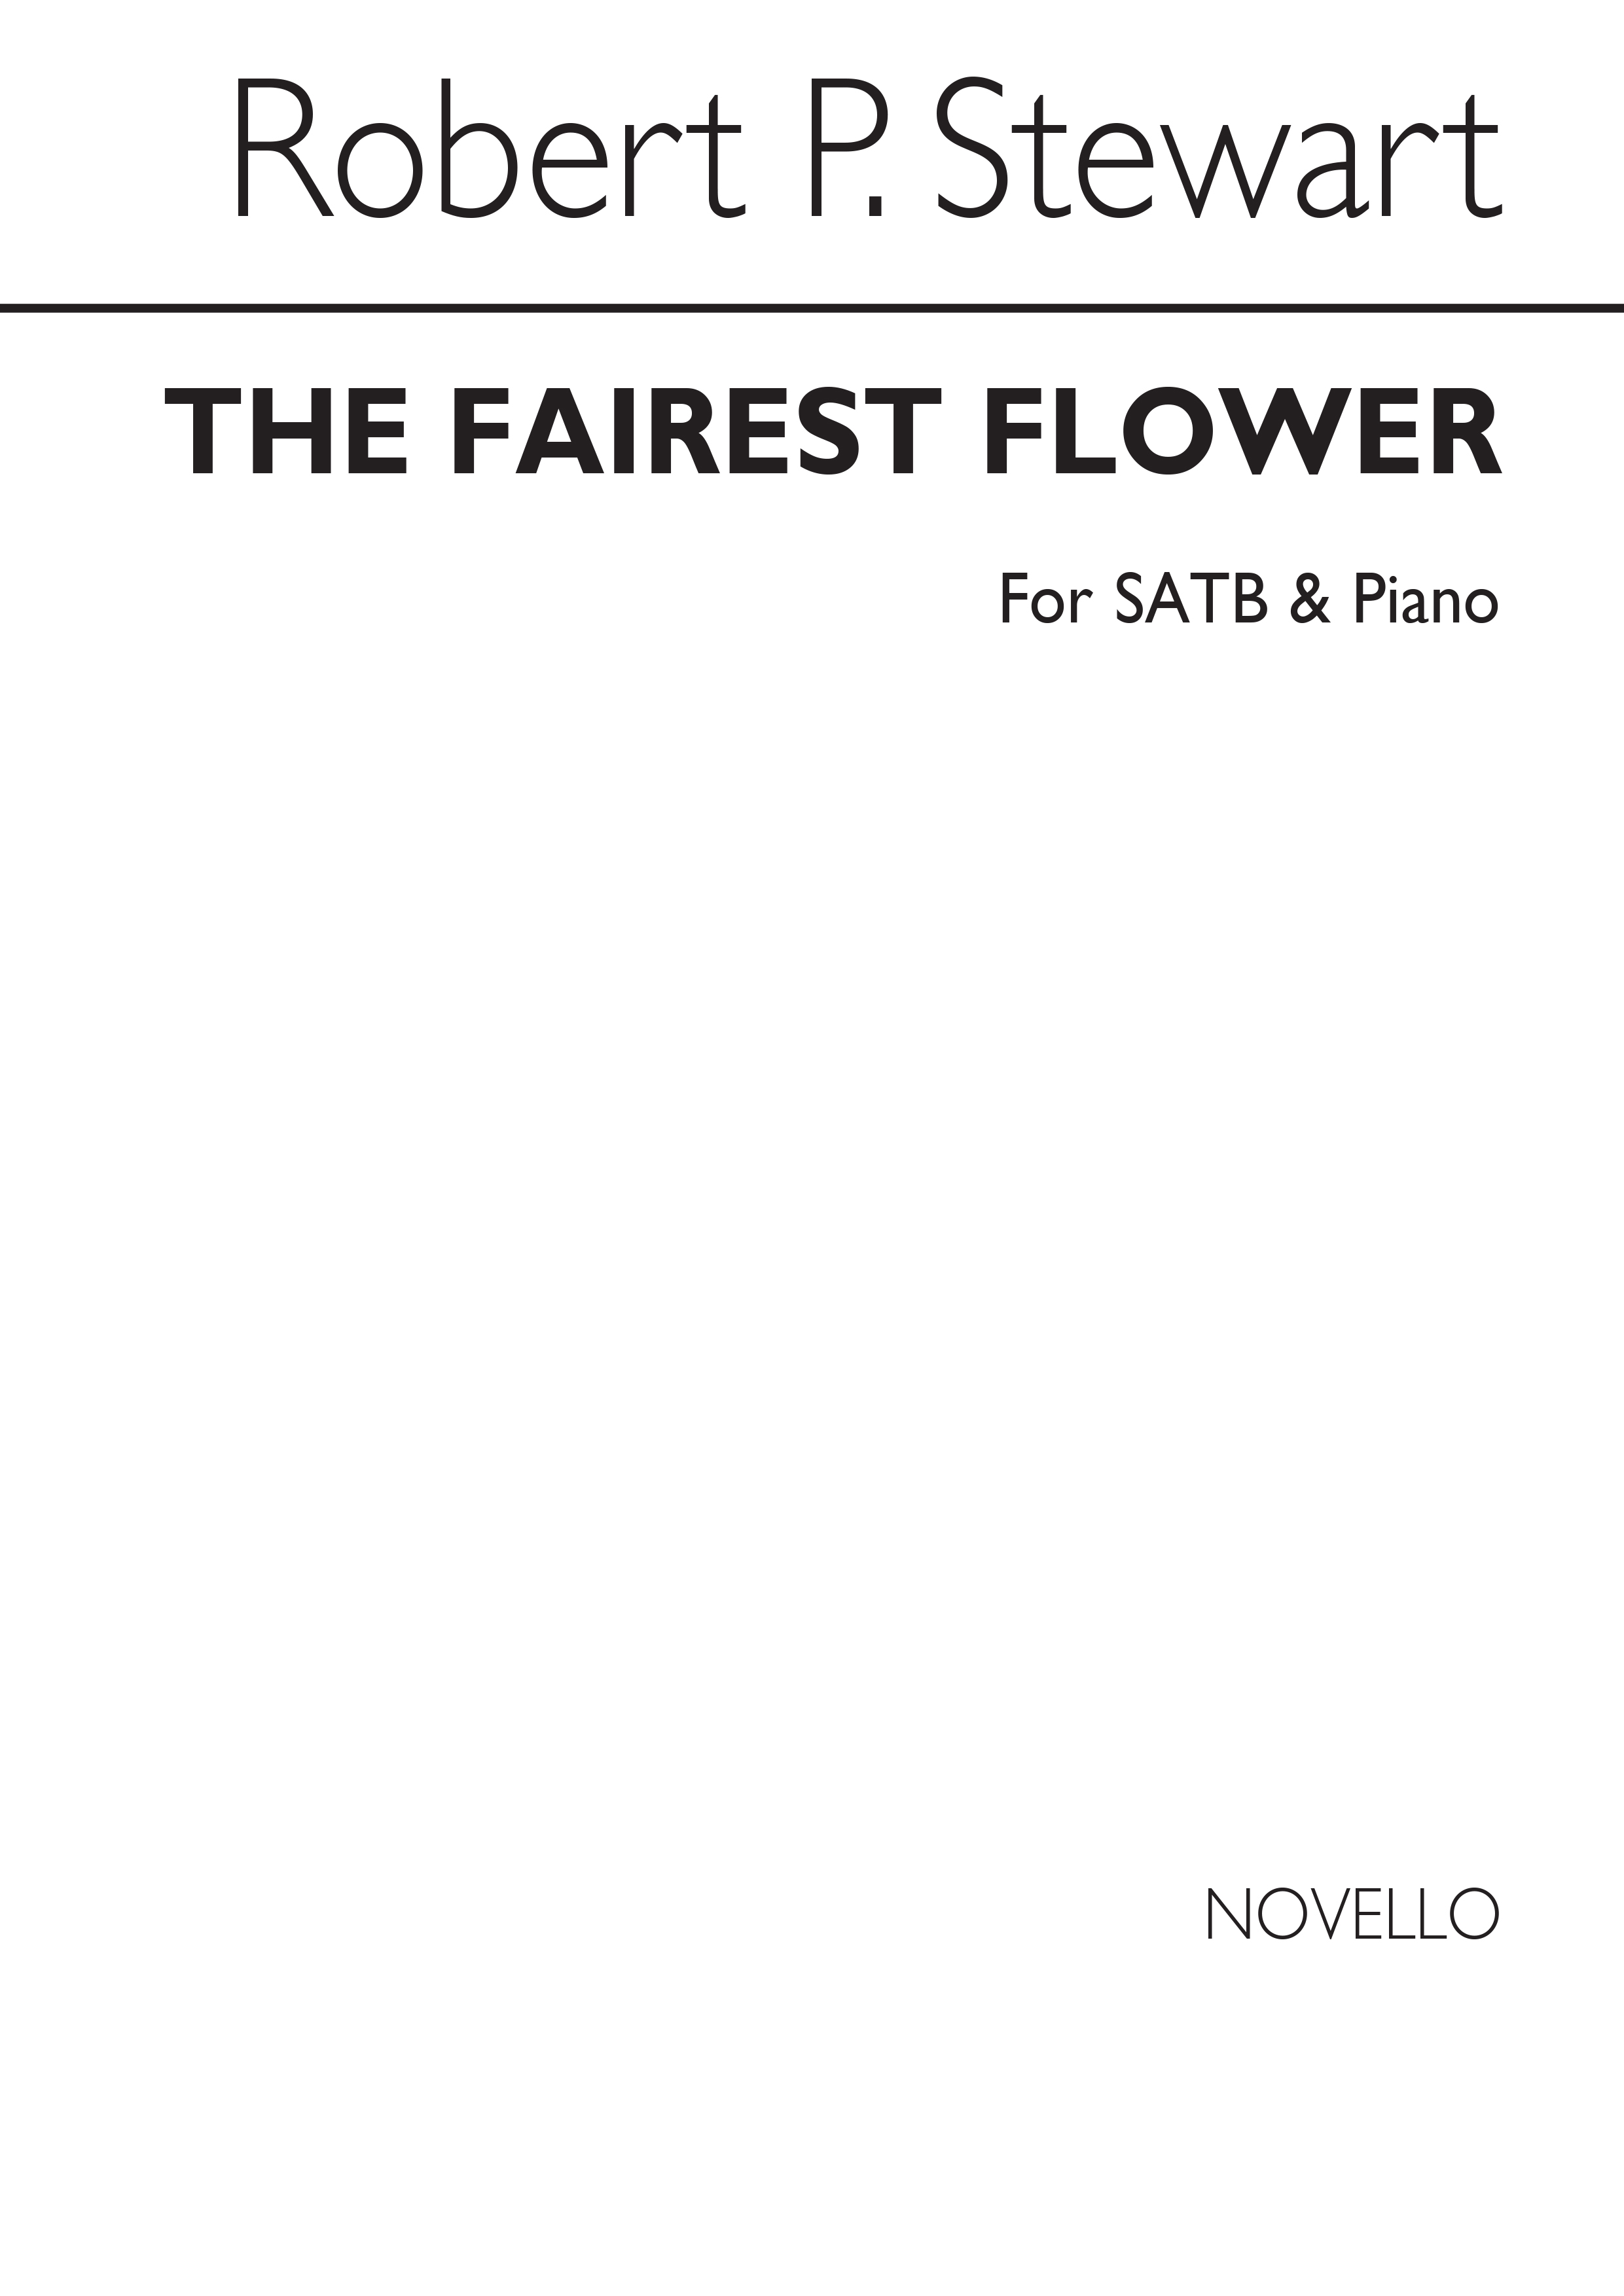 Robert Prescott Stewart: The Fairest Flower